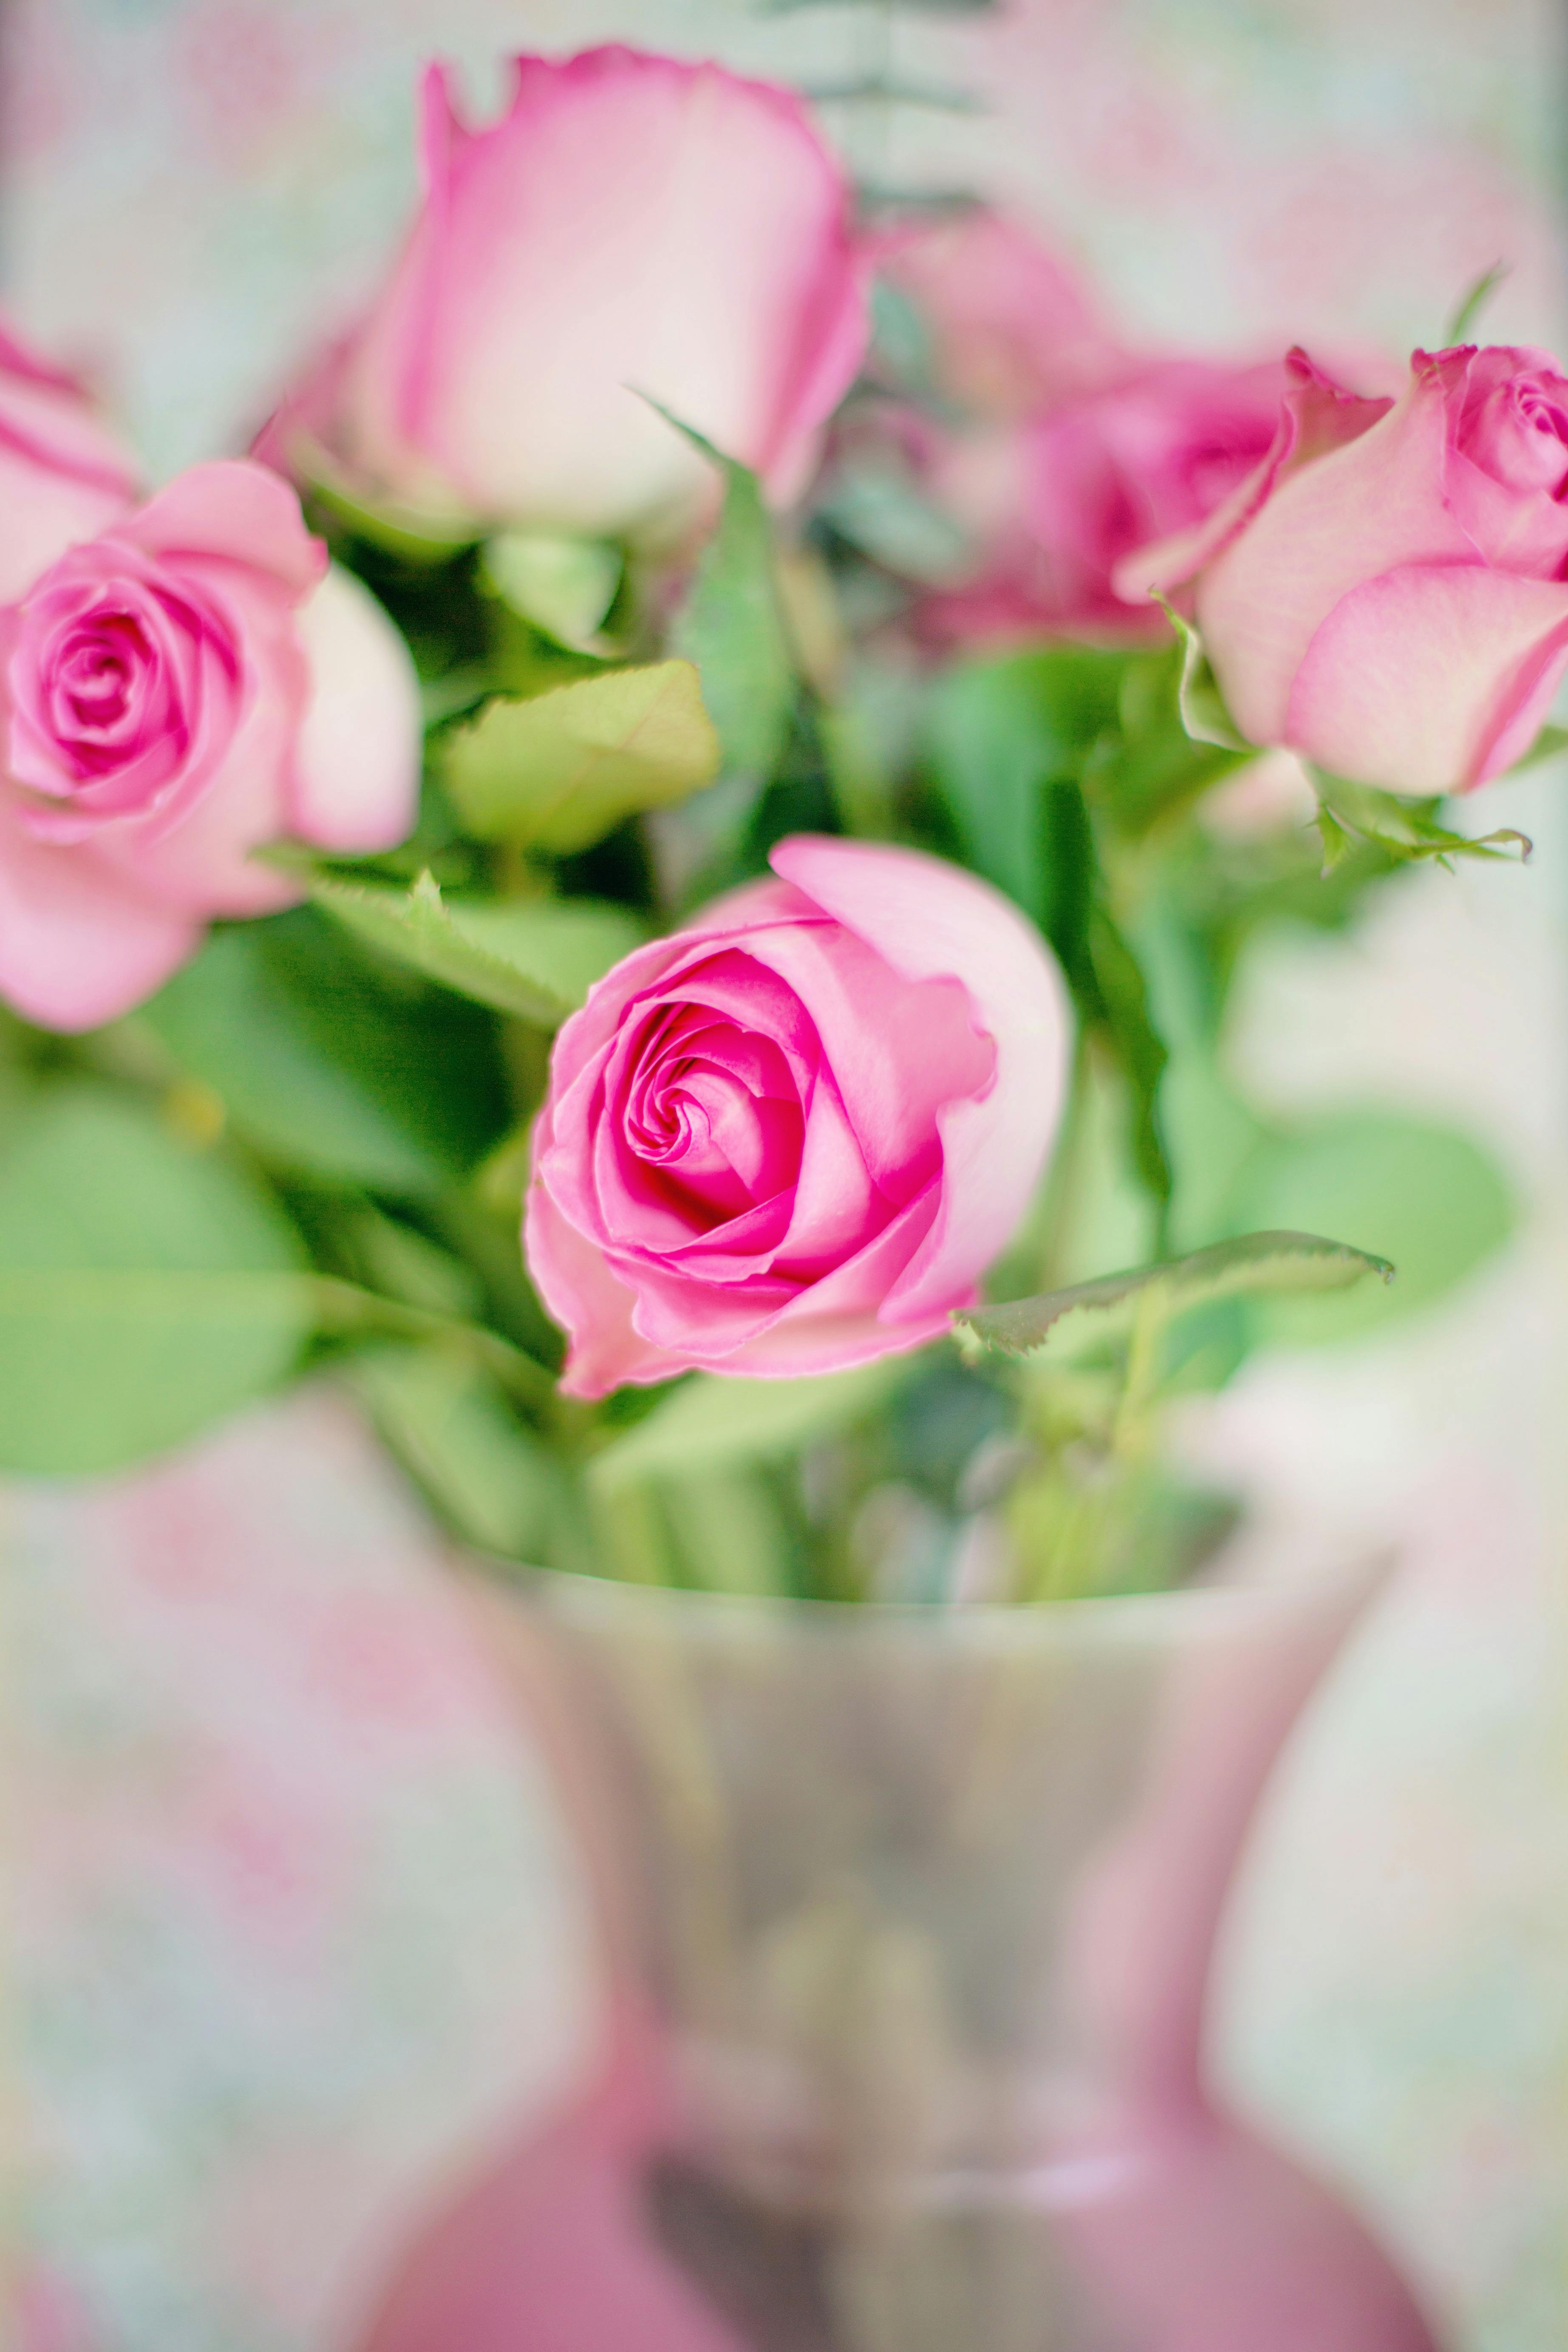 Hoa hồng màu hồng đại diện cho sự lãng mạn, đẹp đẽ và giữa không gian sống đầy màu sắc. Hãy xem những bức ảnh hoa hồng màu hồng để cảm nhận tình cảm hoa nở.